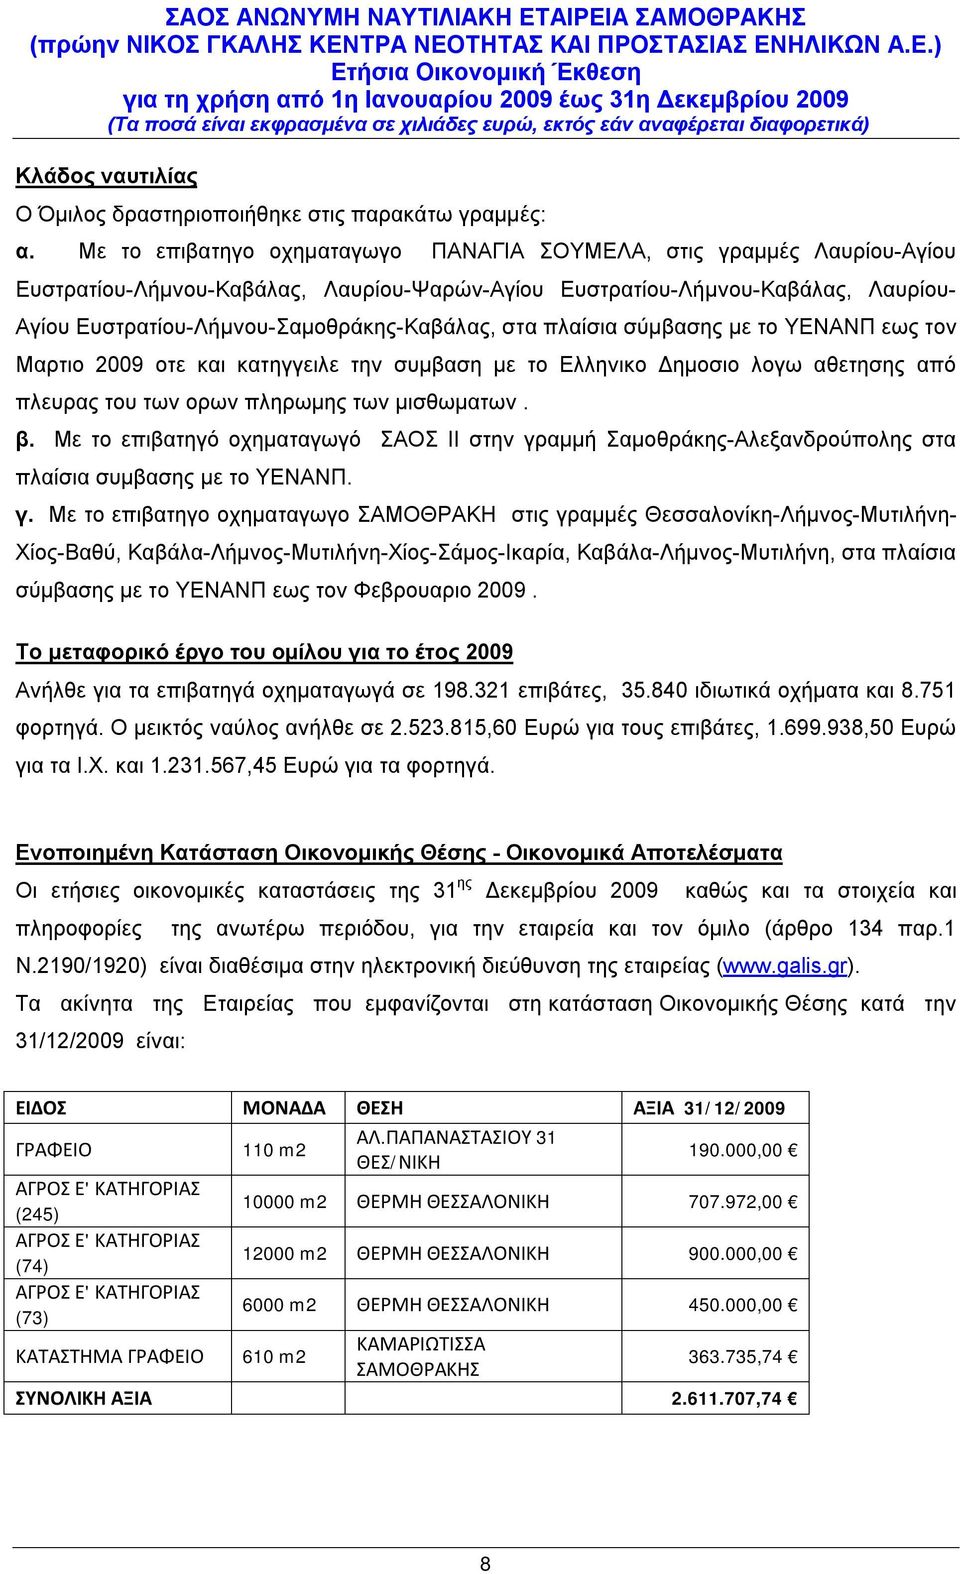 στα πλαίσια σύμβασης με το ΥΕΝΑΝΠ εως τον Μαρτιο 2009 οτε και κατηγγειλε την συμβαση με το Ελληνικο Δημοσιο λογω αθετησης από πλευρας του των ορων πληρωμης των μισθωματων. β.